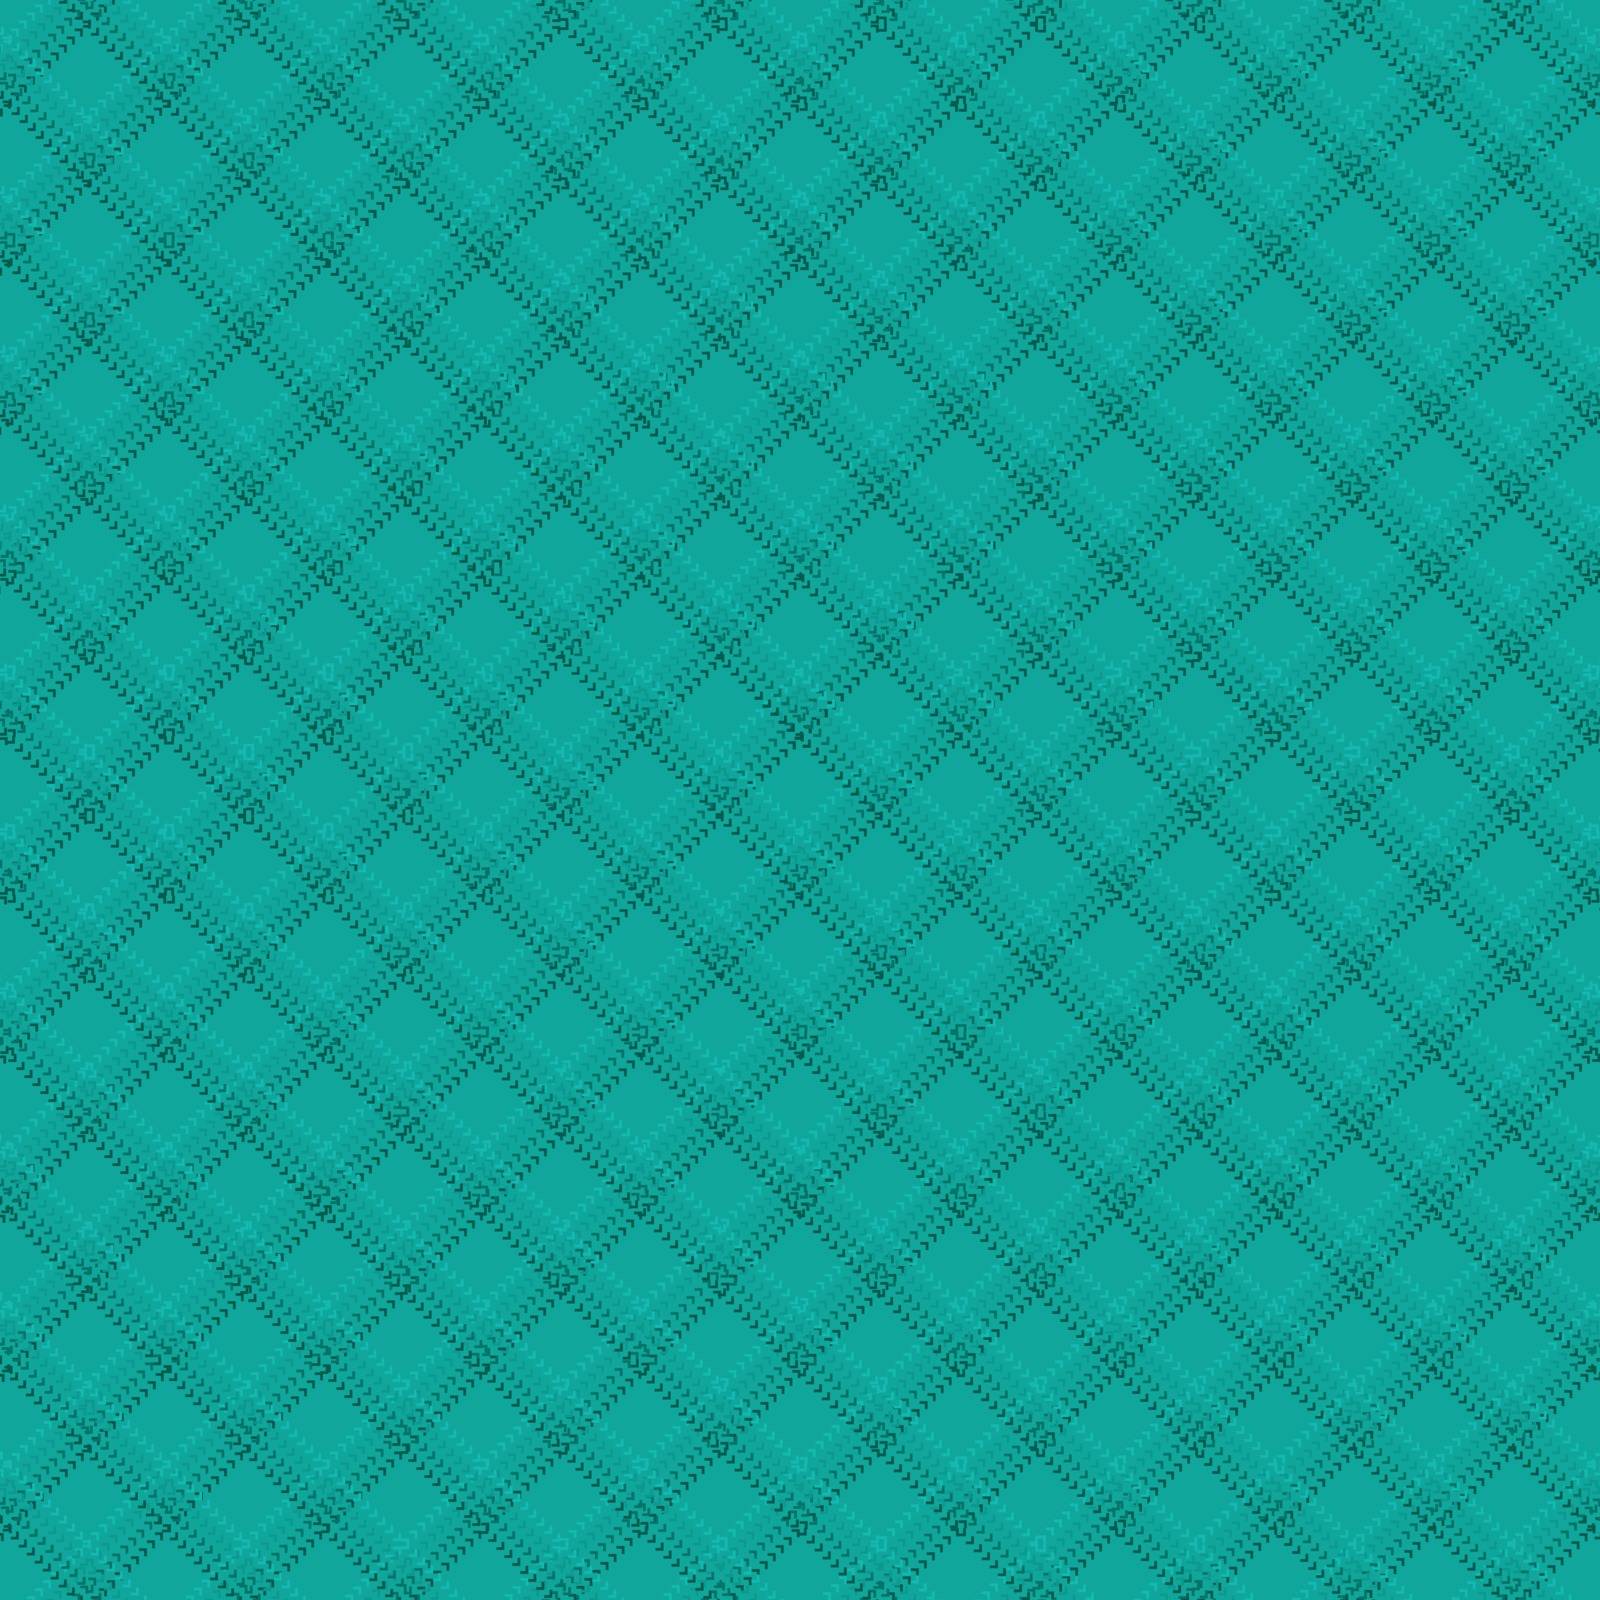 Diagonal background pattern by ggebl